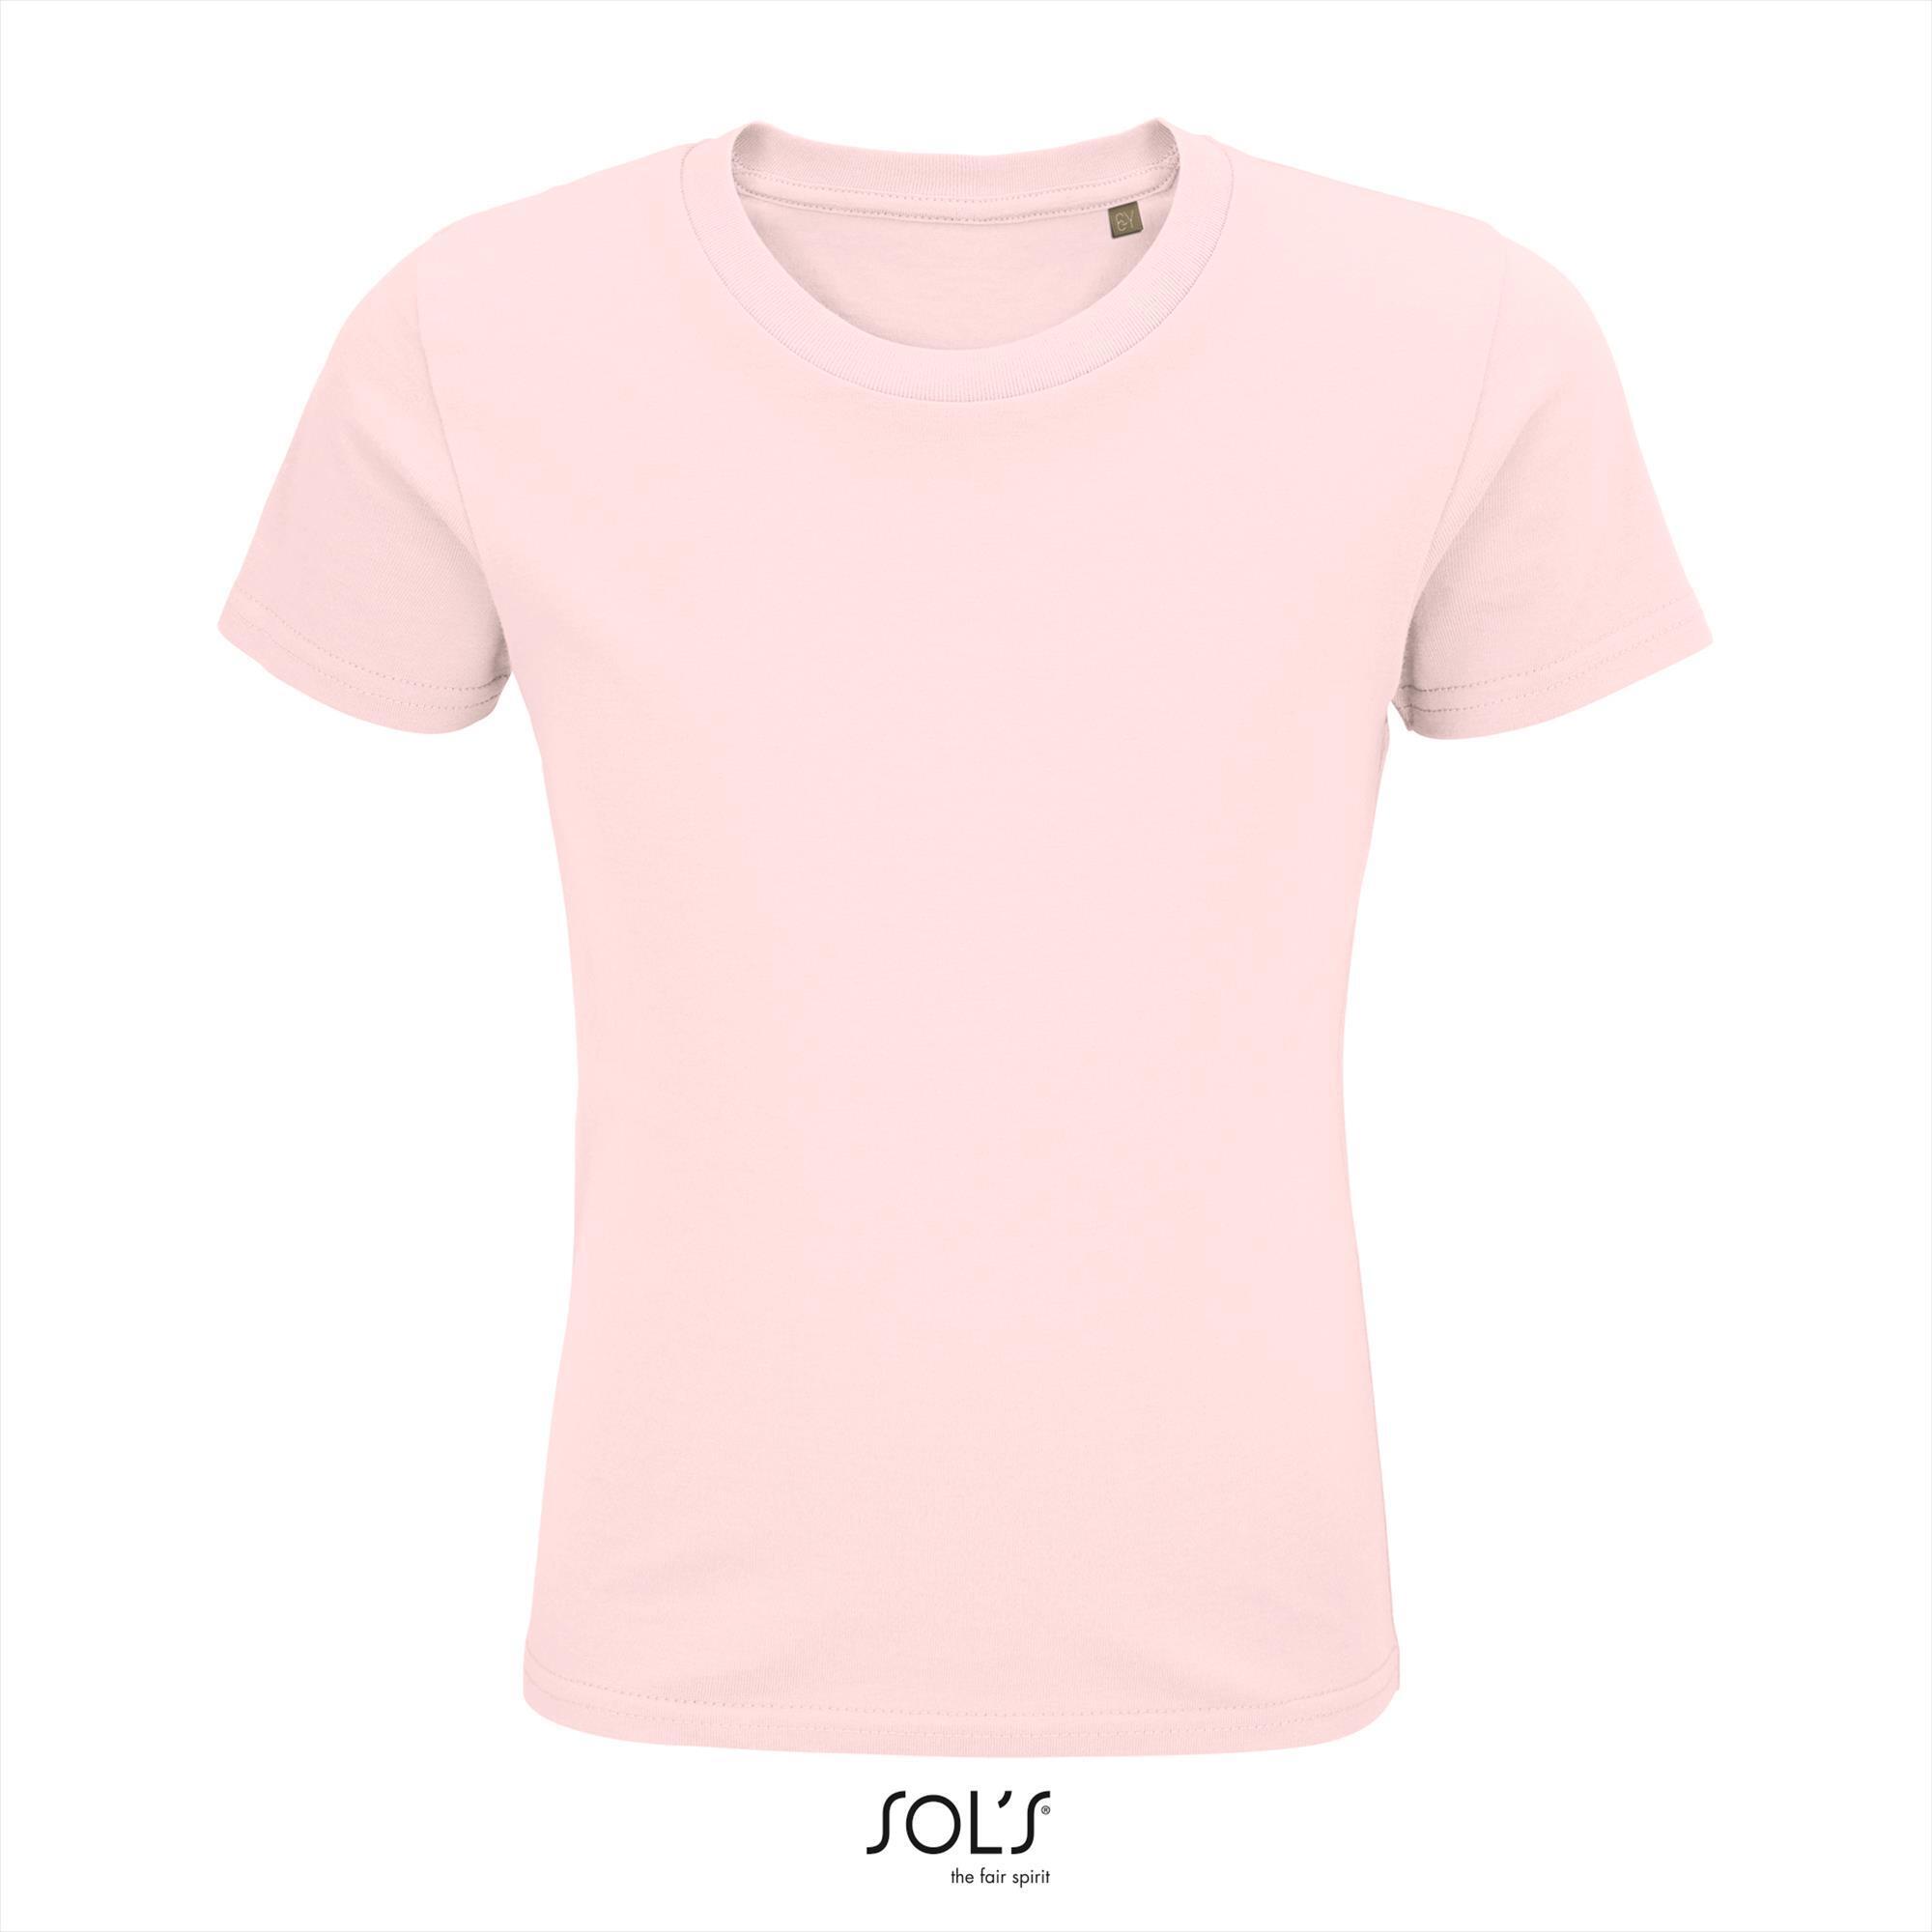 Kinder t-shirt roze biologisch katoen ronde hals